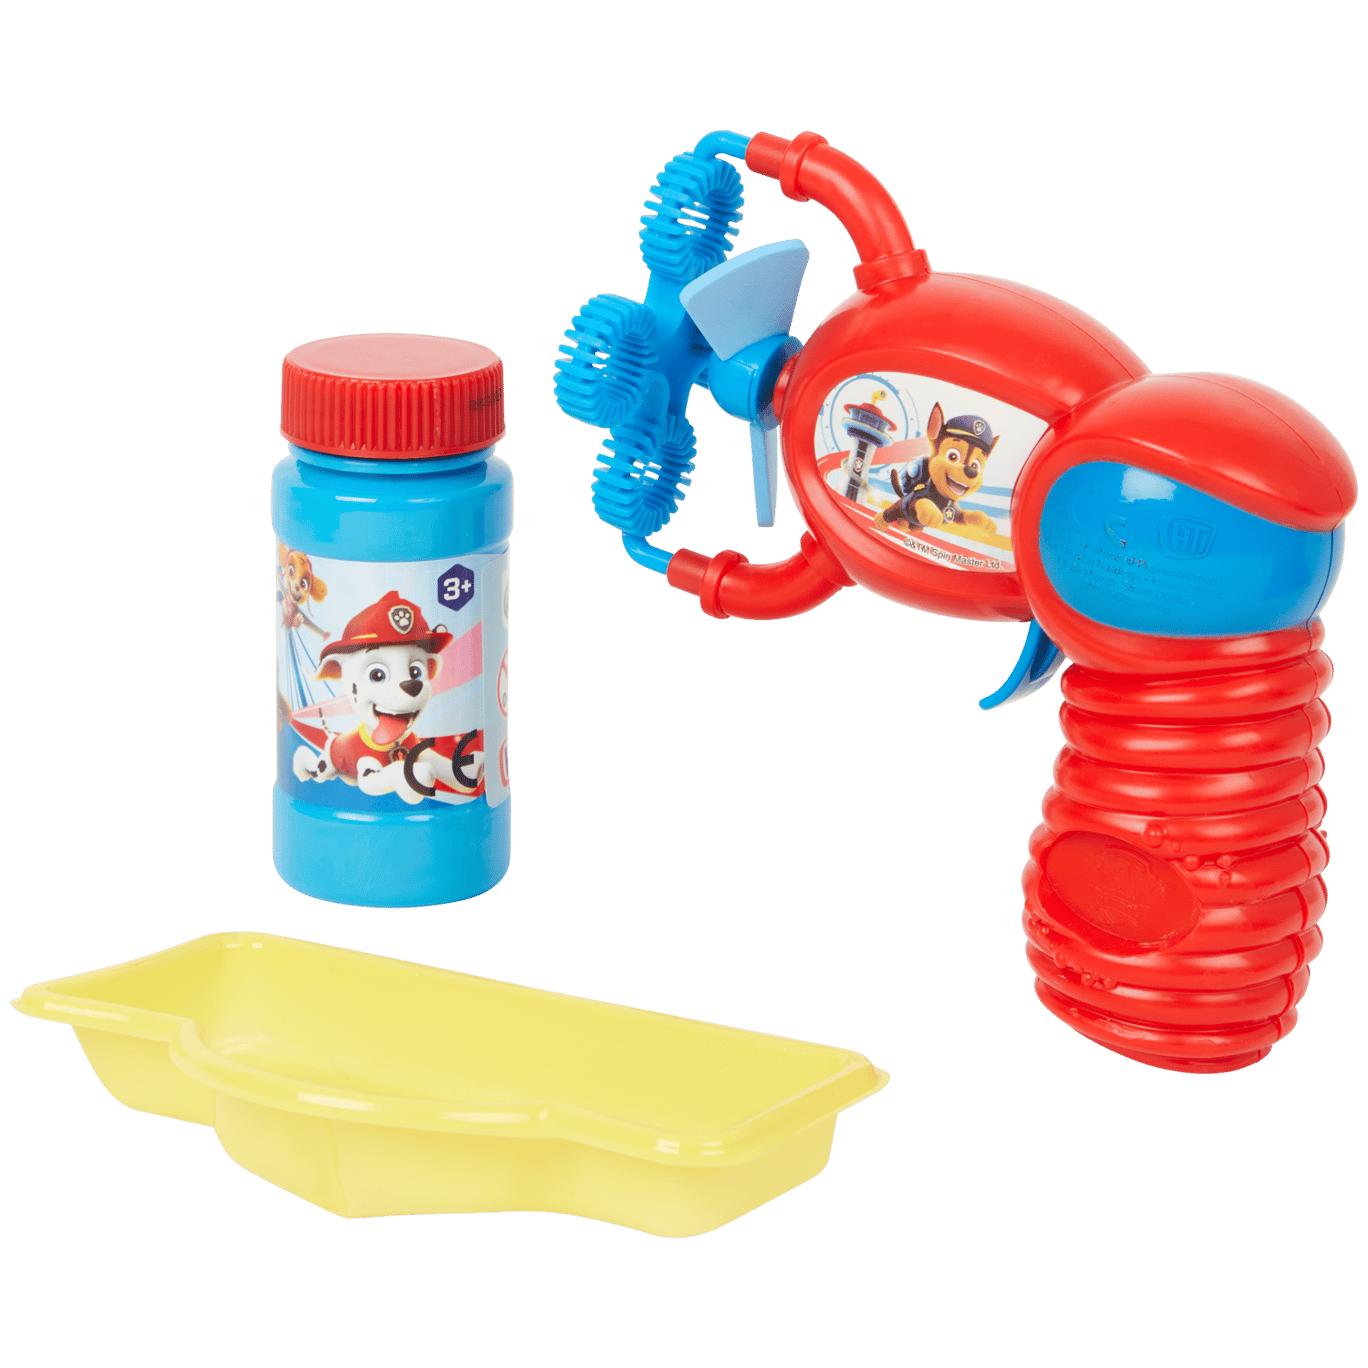 Waardig Waakzaam Twisted Leuk en goedkoop speelgoed voor alle kinderen | Action.com